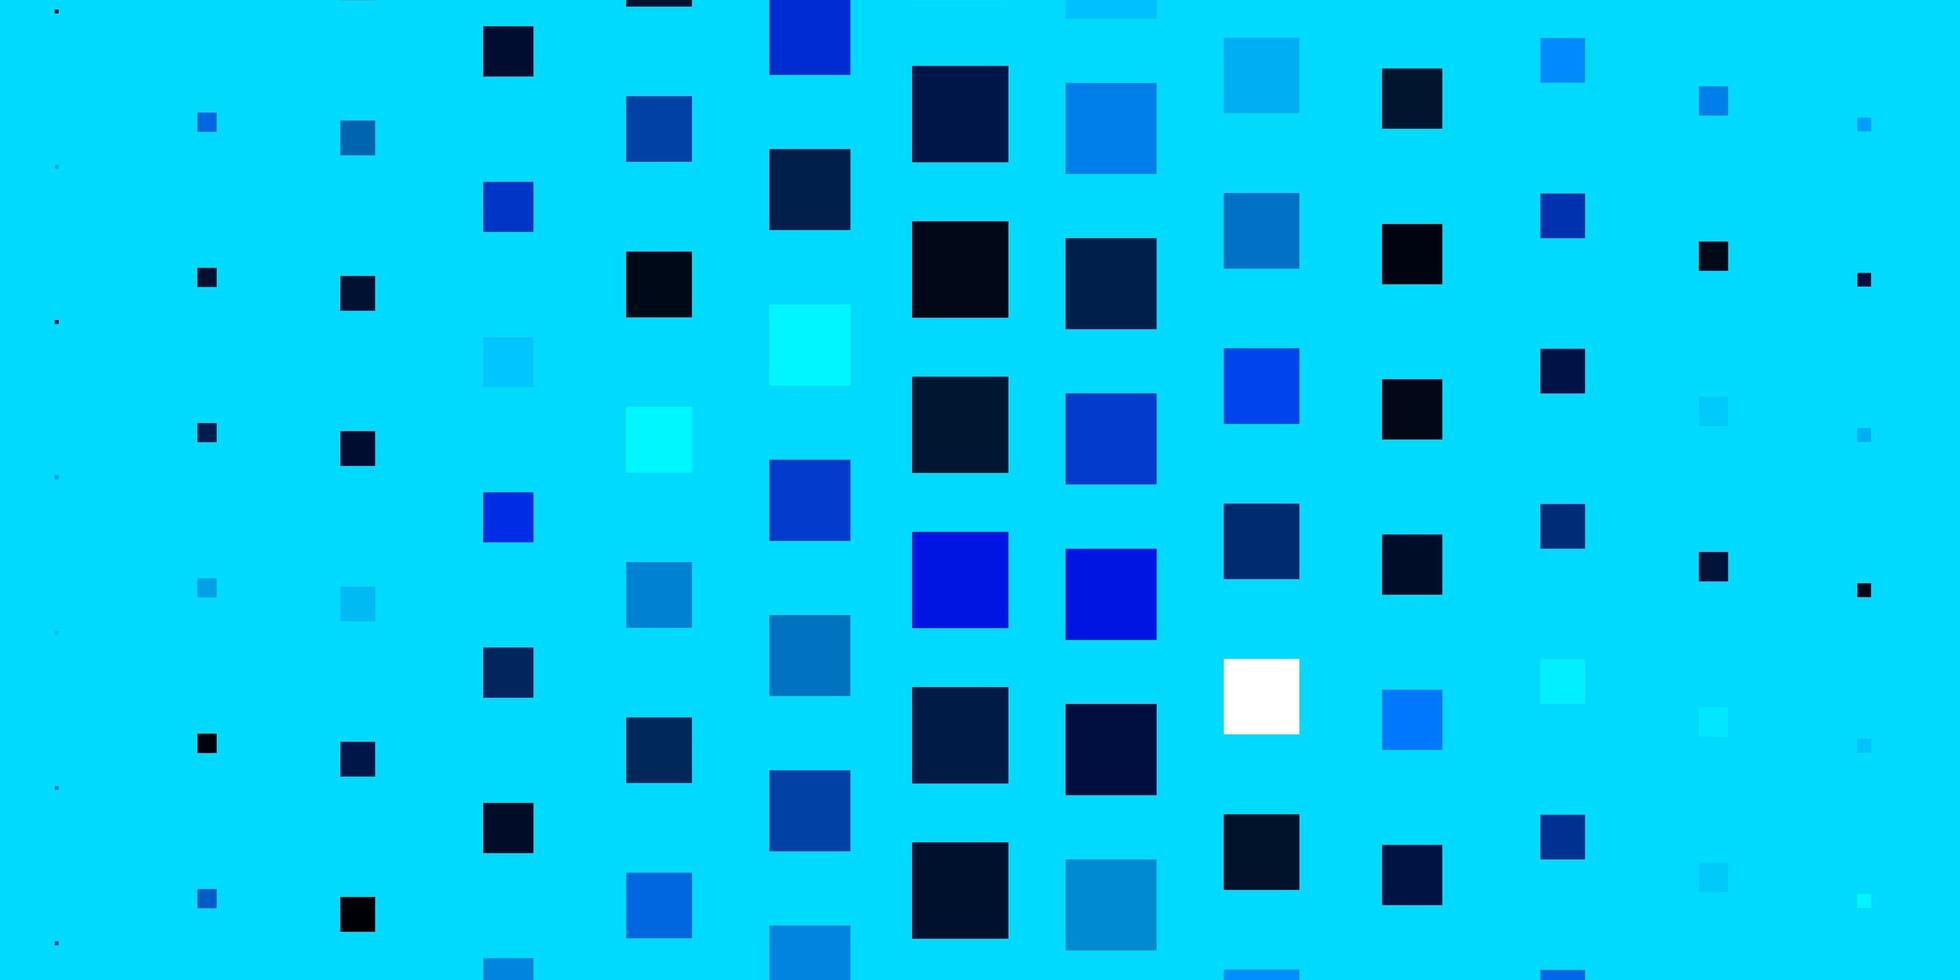 padrão de vetor azul claro em estilo quadrado nova ilustração abstrata com formas retangulares melhor design para seu banner de pôster de anúncio